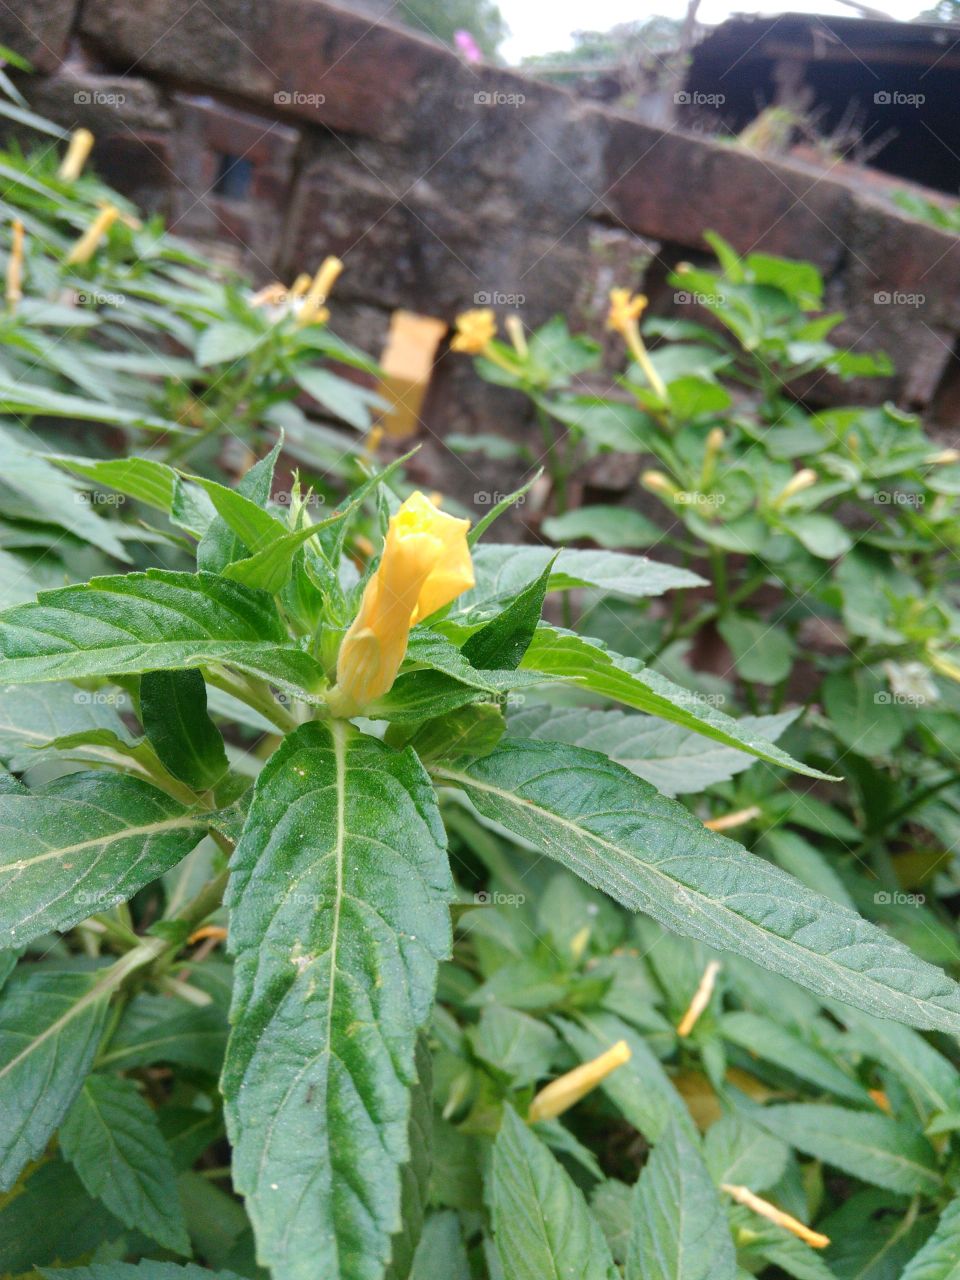 new yellow flower